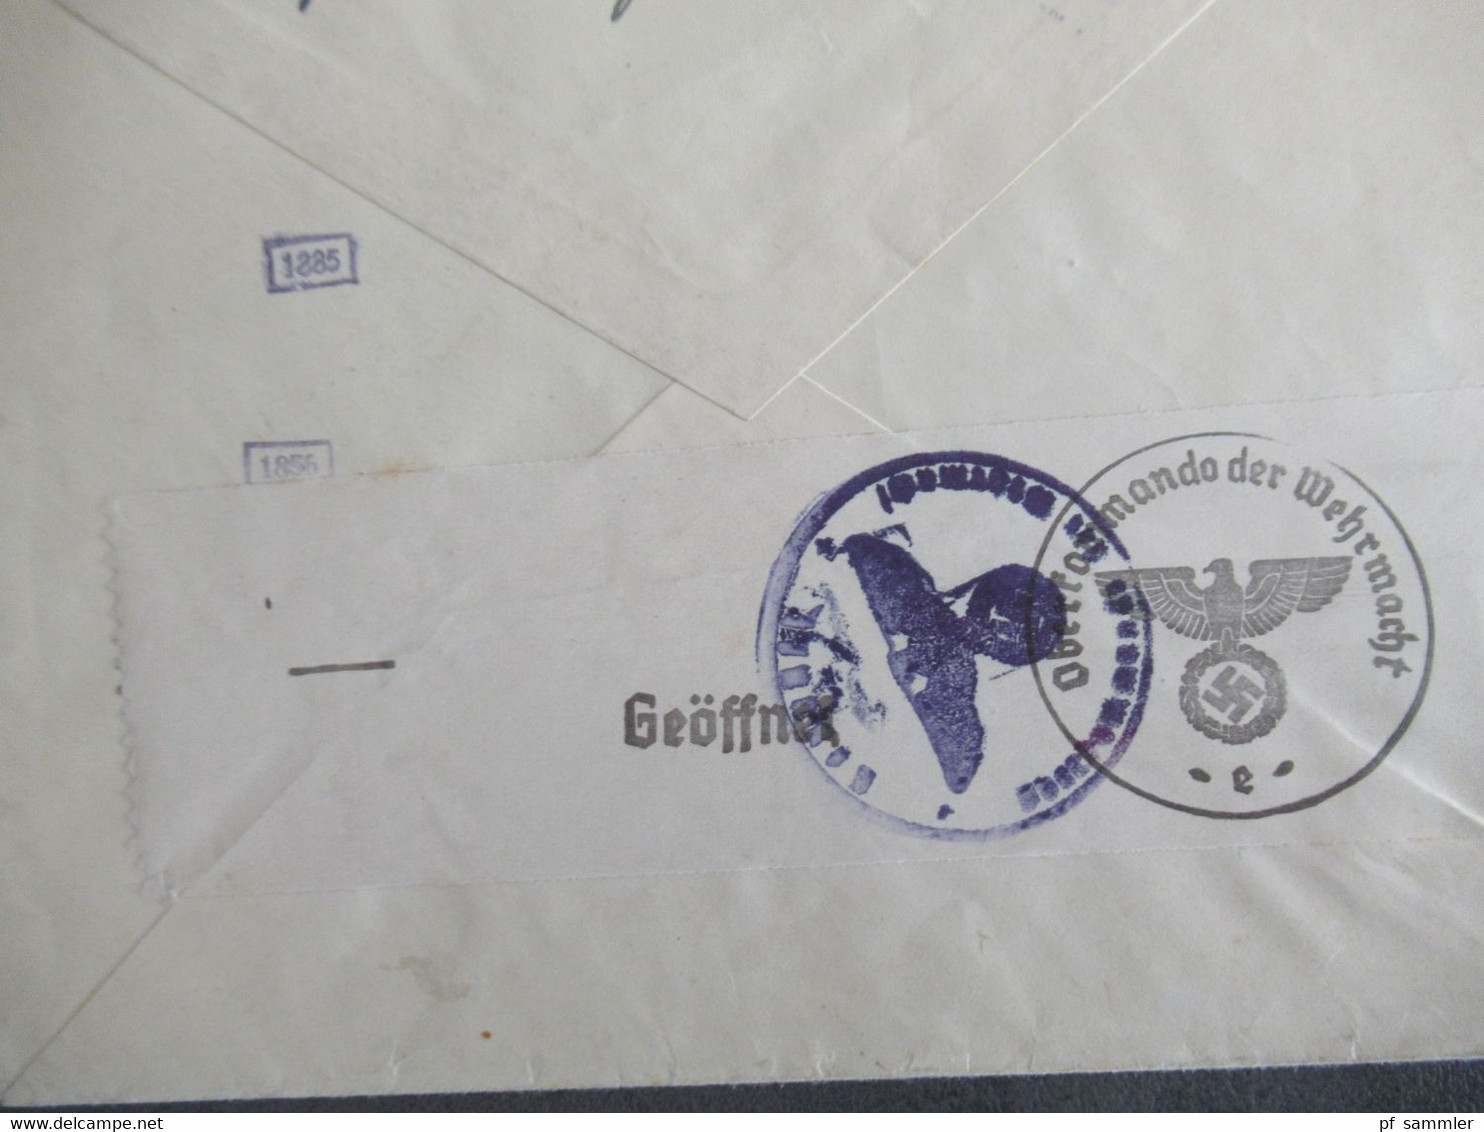 Böhmen Und Mähren Nr.32 EF Auslandsbrief Luzern Schweiz Mit OKW Zensur / Mehrfachzensur Zensurstempel / Zensurstreifen - Lettres & Documents